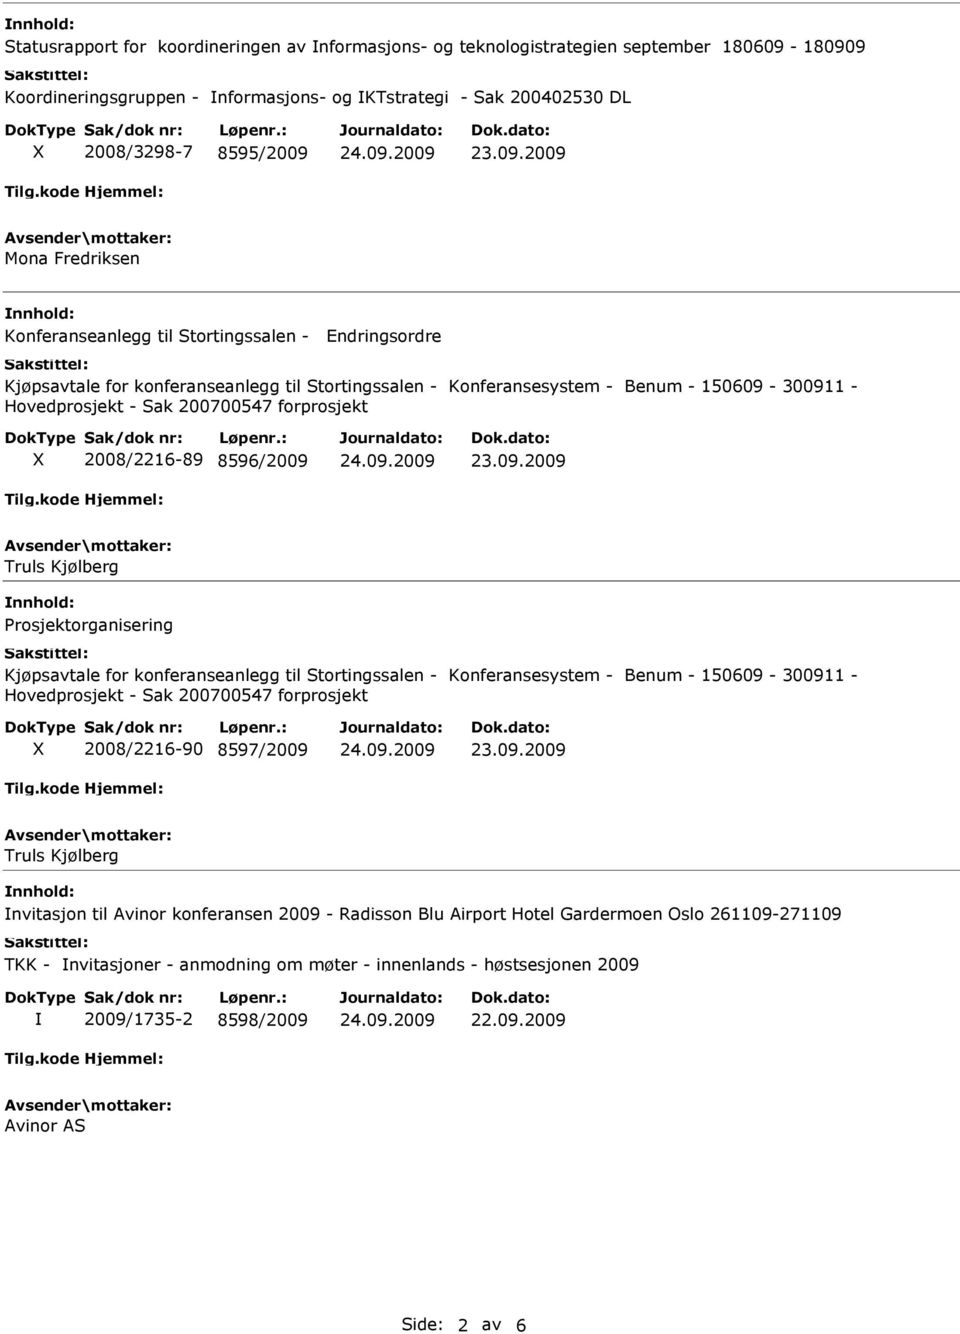 forprosjekt 2008/2216-89 8596/2009 Truls Kjølberg Prosjektorganisering Kjøpsavtale for konferanseanlegg til Stortingssalen - Konferansesystem - Benum - 150609-300911 - Hovedprosjekt - Sak 200700547